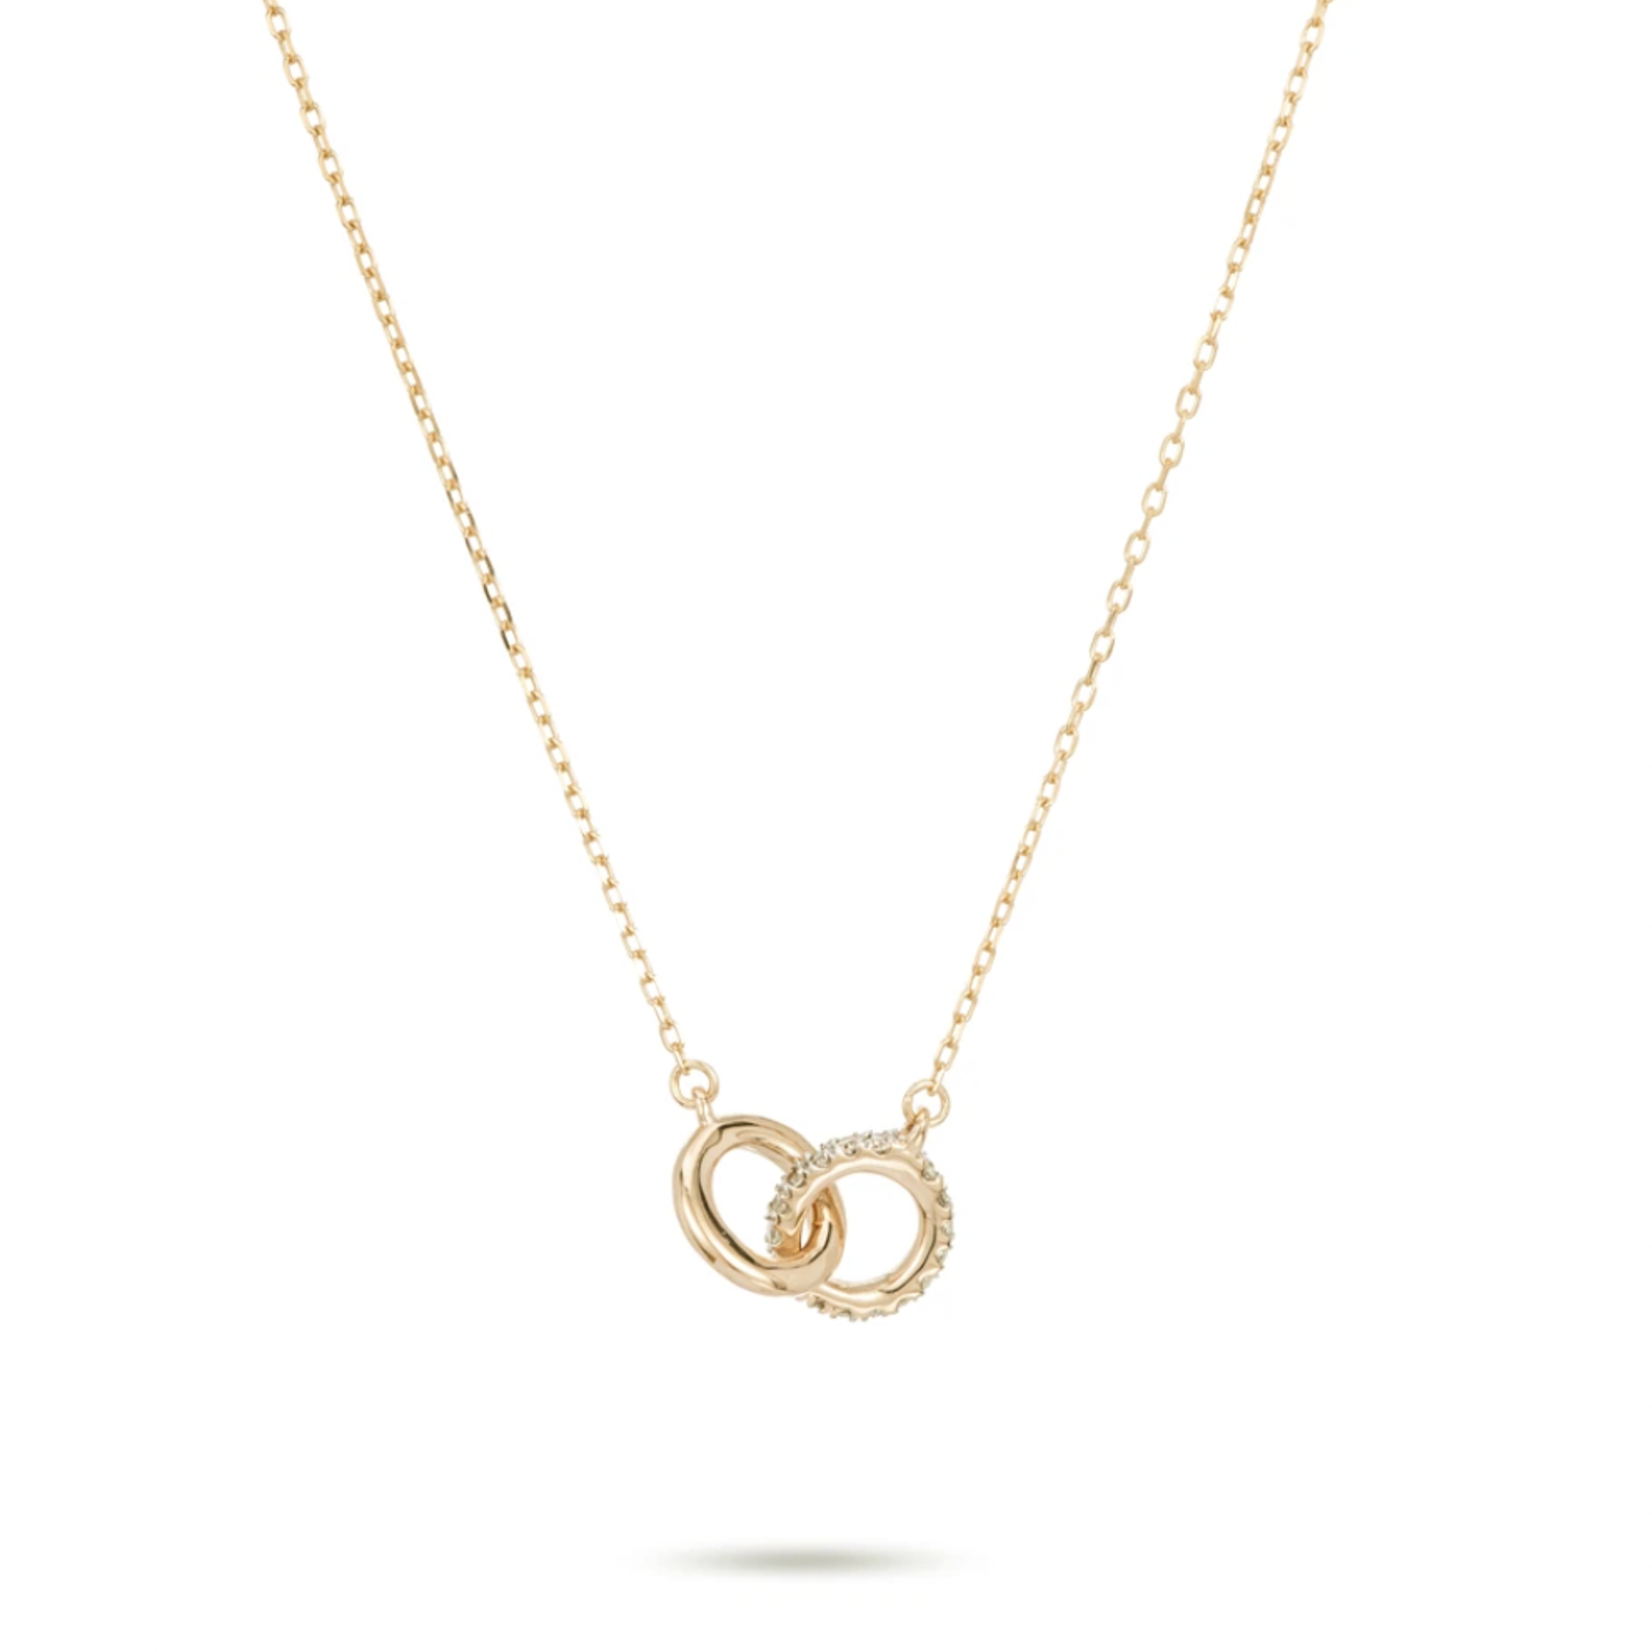 Pave interlocking loop necklace - Y14